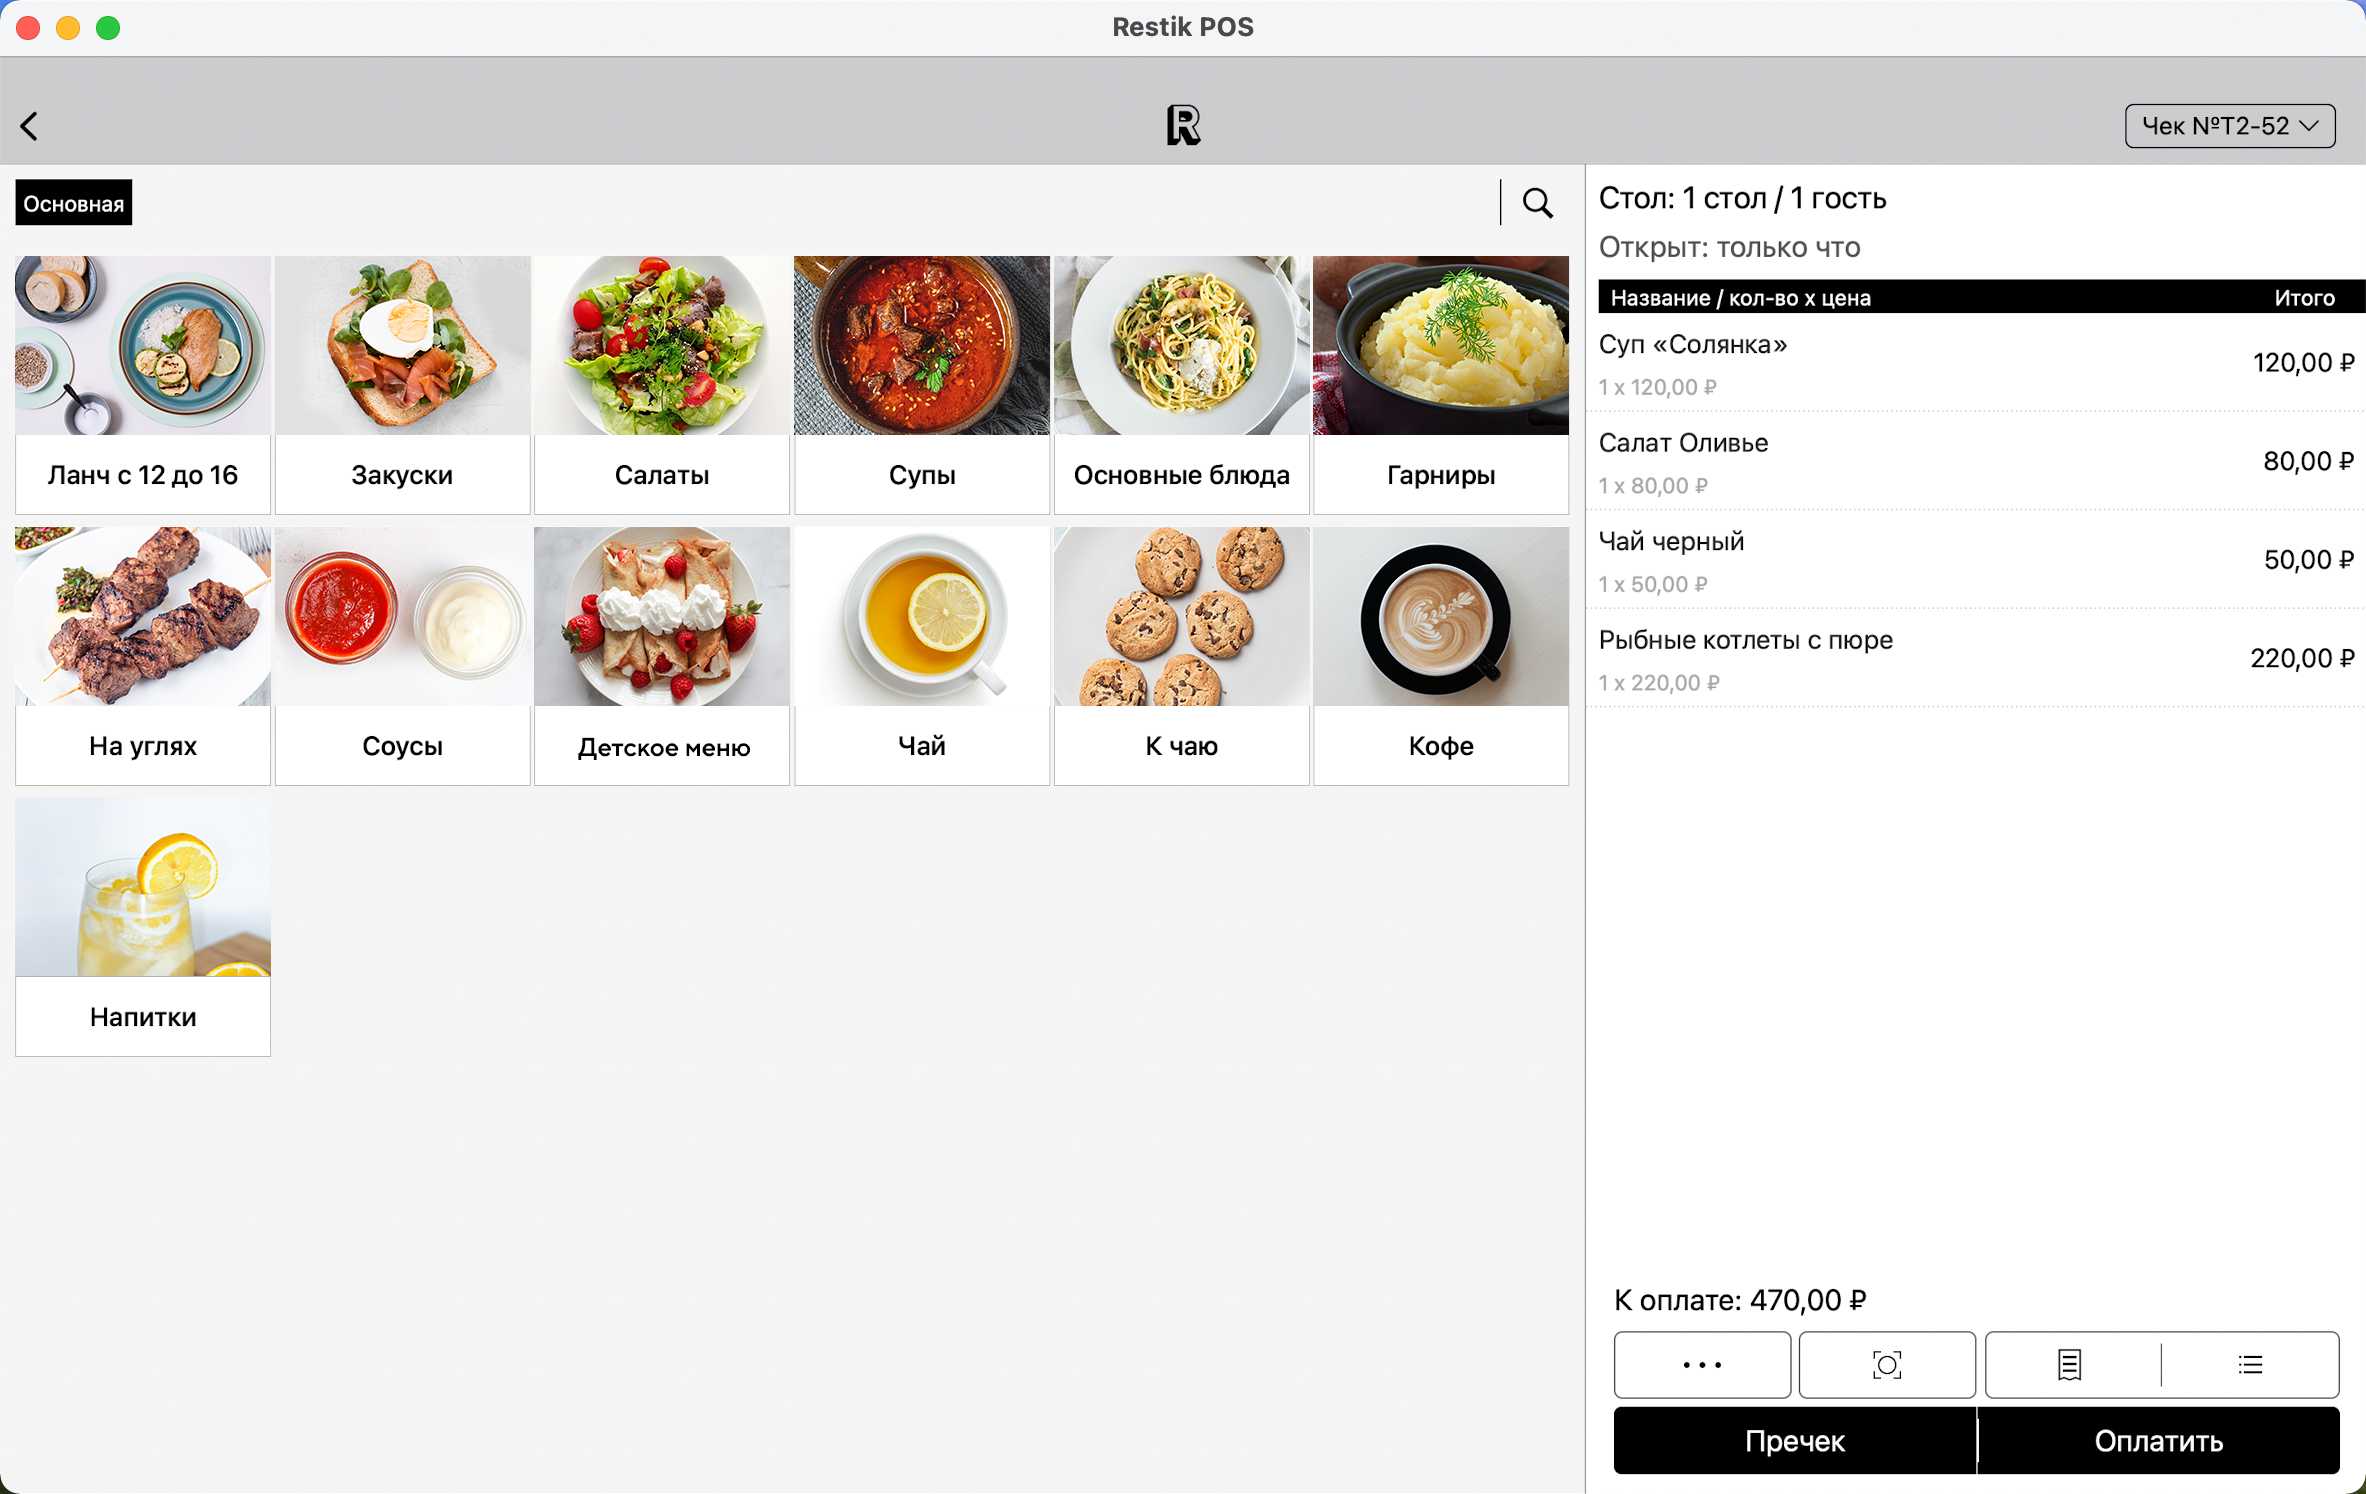 Интерфейс кассовой программы для кафе в системе Restik